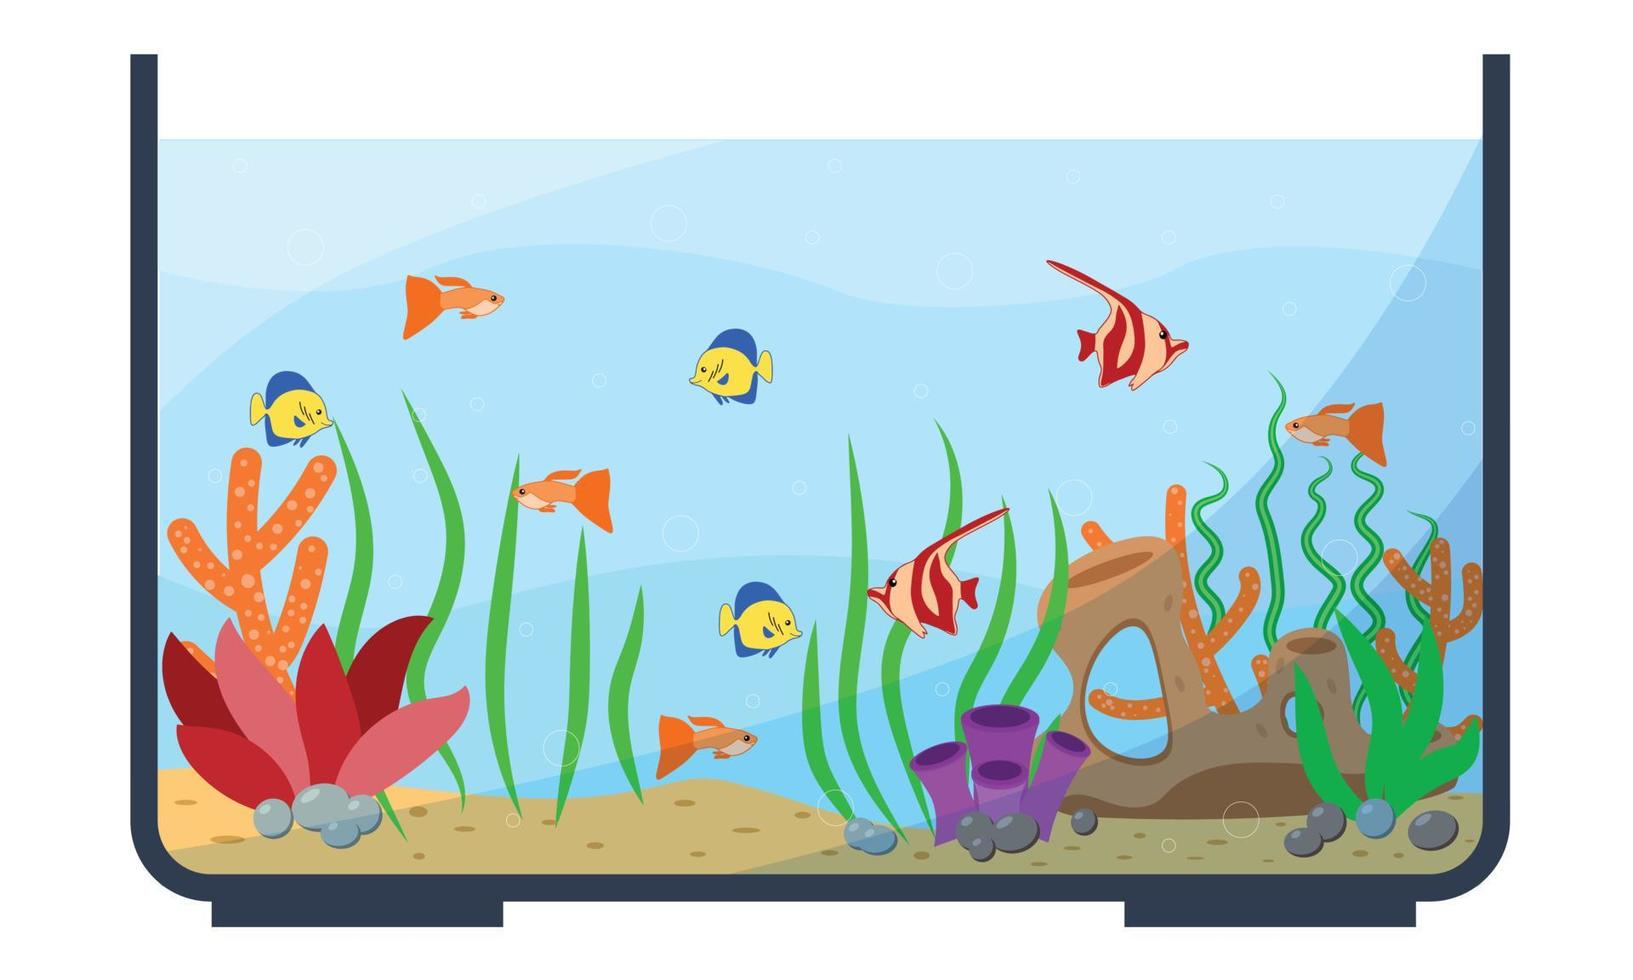 Glaswarenaquarium mit exotischen tropischen Fischen. Aquarium mit Kaiser- und Goldfischen, schwimmenden Kaiserfischen, heimischen Diskus und Korallen, Vivarium. Unterwasserleben und Naturthema vektor